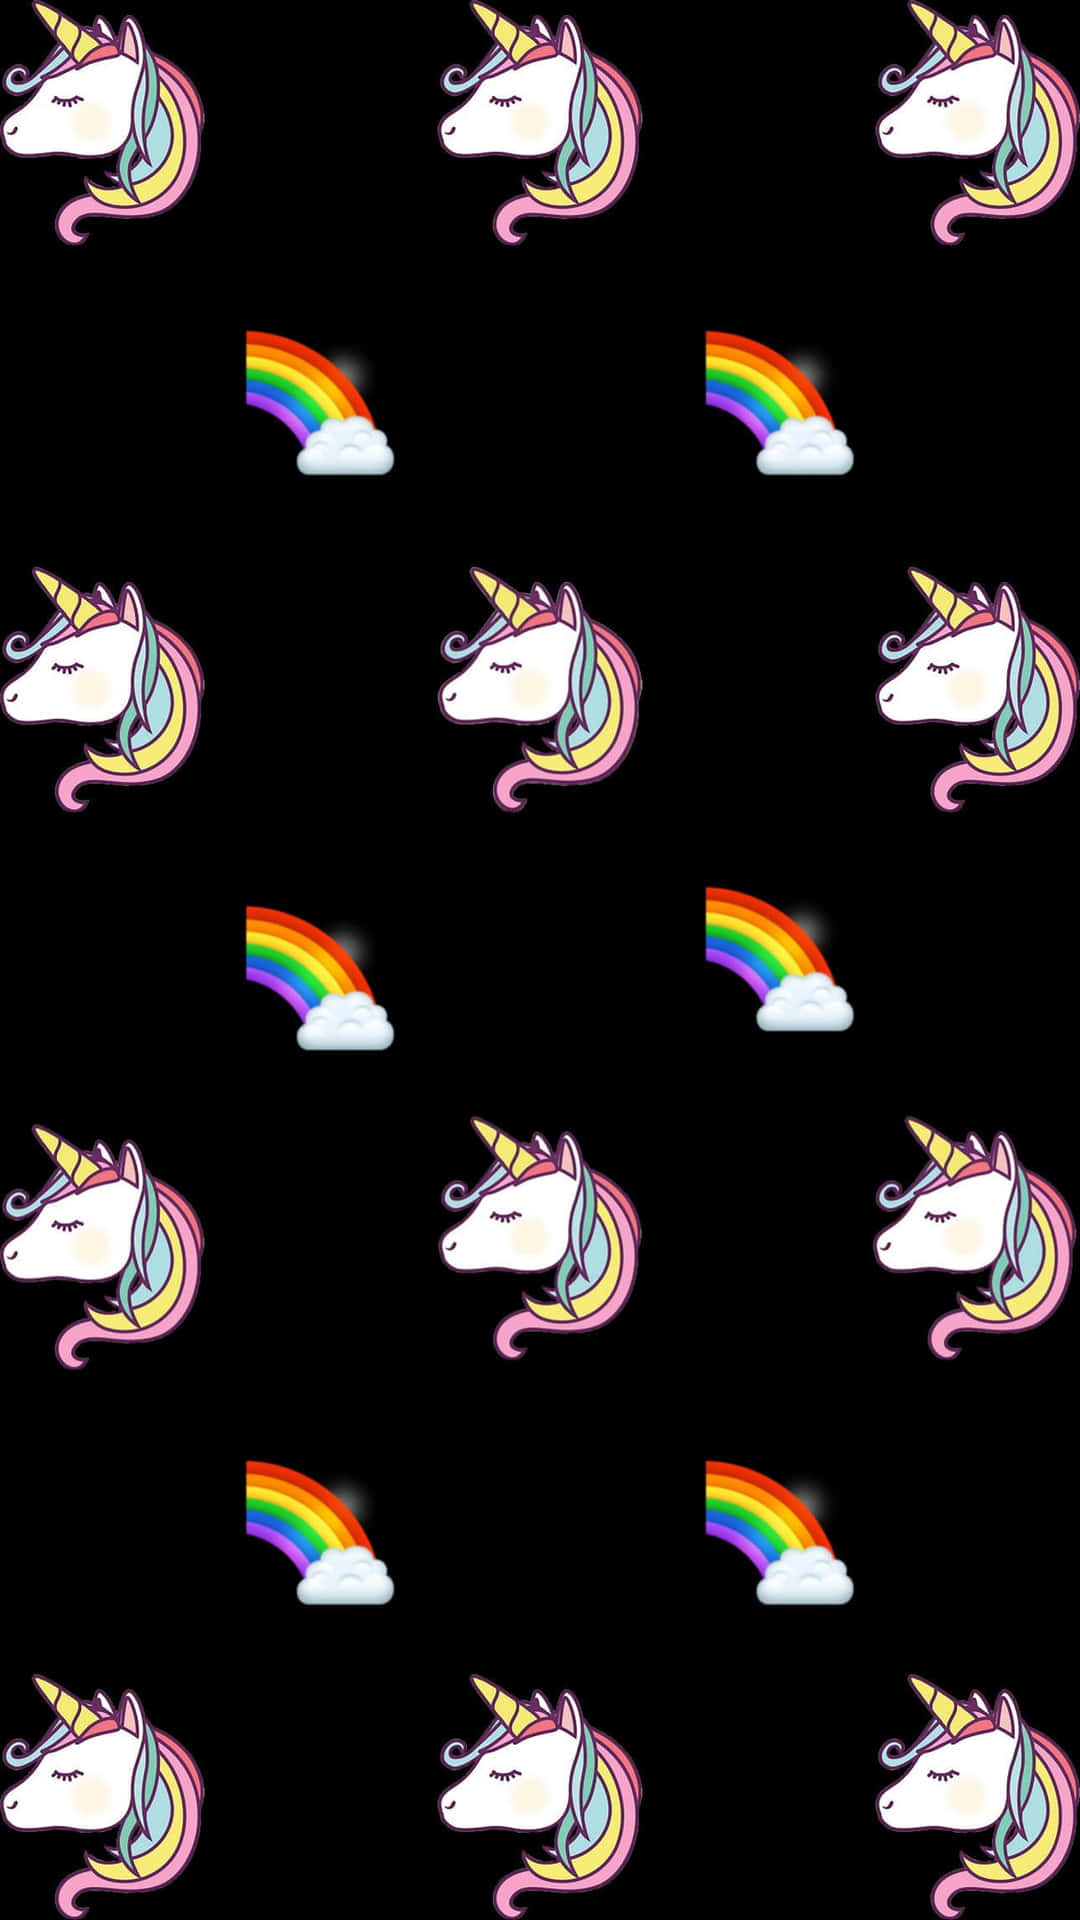 Unicornand Rainbow Pattern Wallpaper